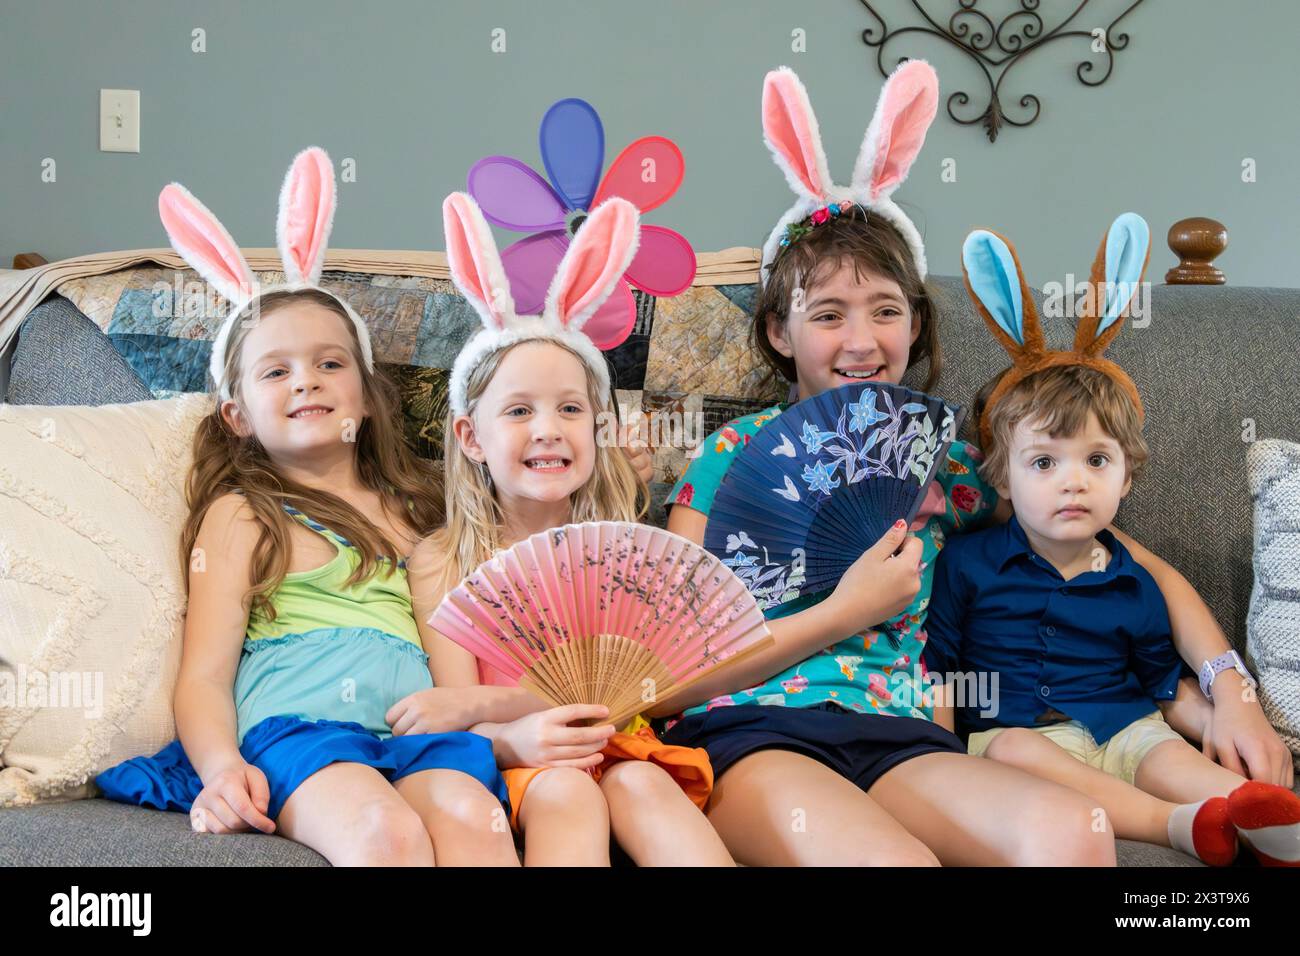 Eine Familie mit drei Mädchen, Schwestern und einem Kleinkind, Bruder sitzt auf einer Couch, zeigt ihre osterhasenohren auf dem Kopf und lächelt. Stockfoto